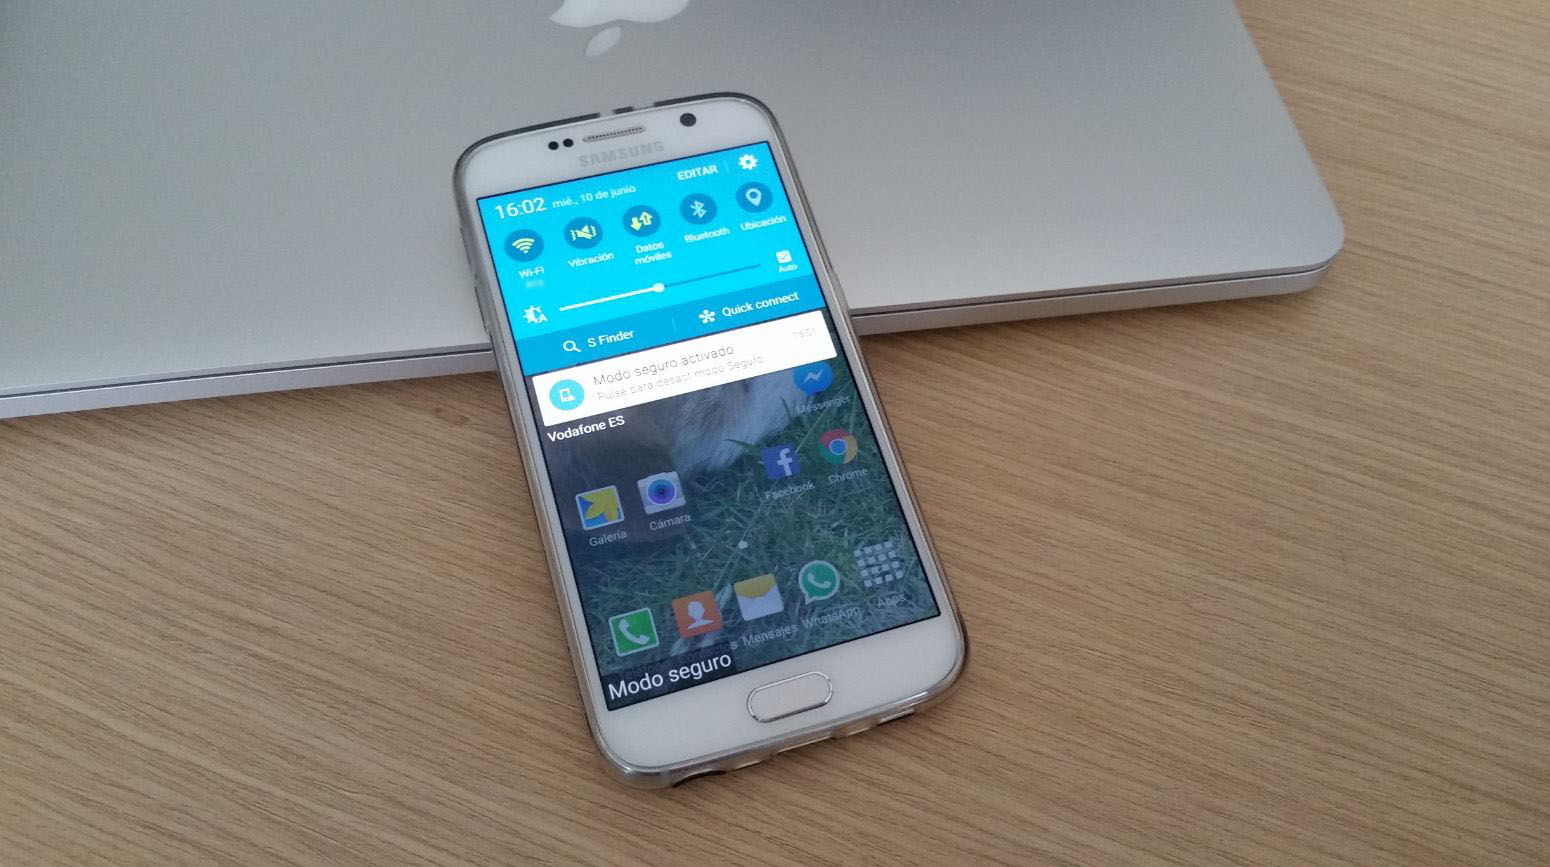 Activar Modo seguro en Galaxy S6